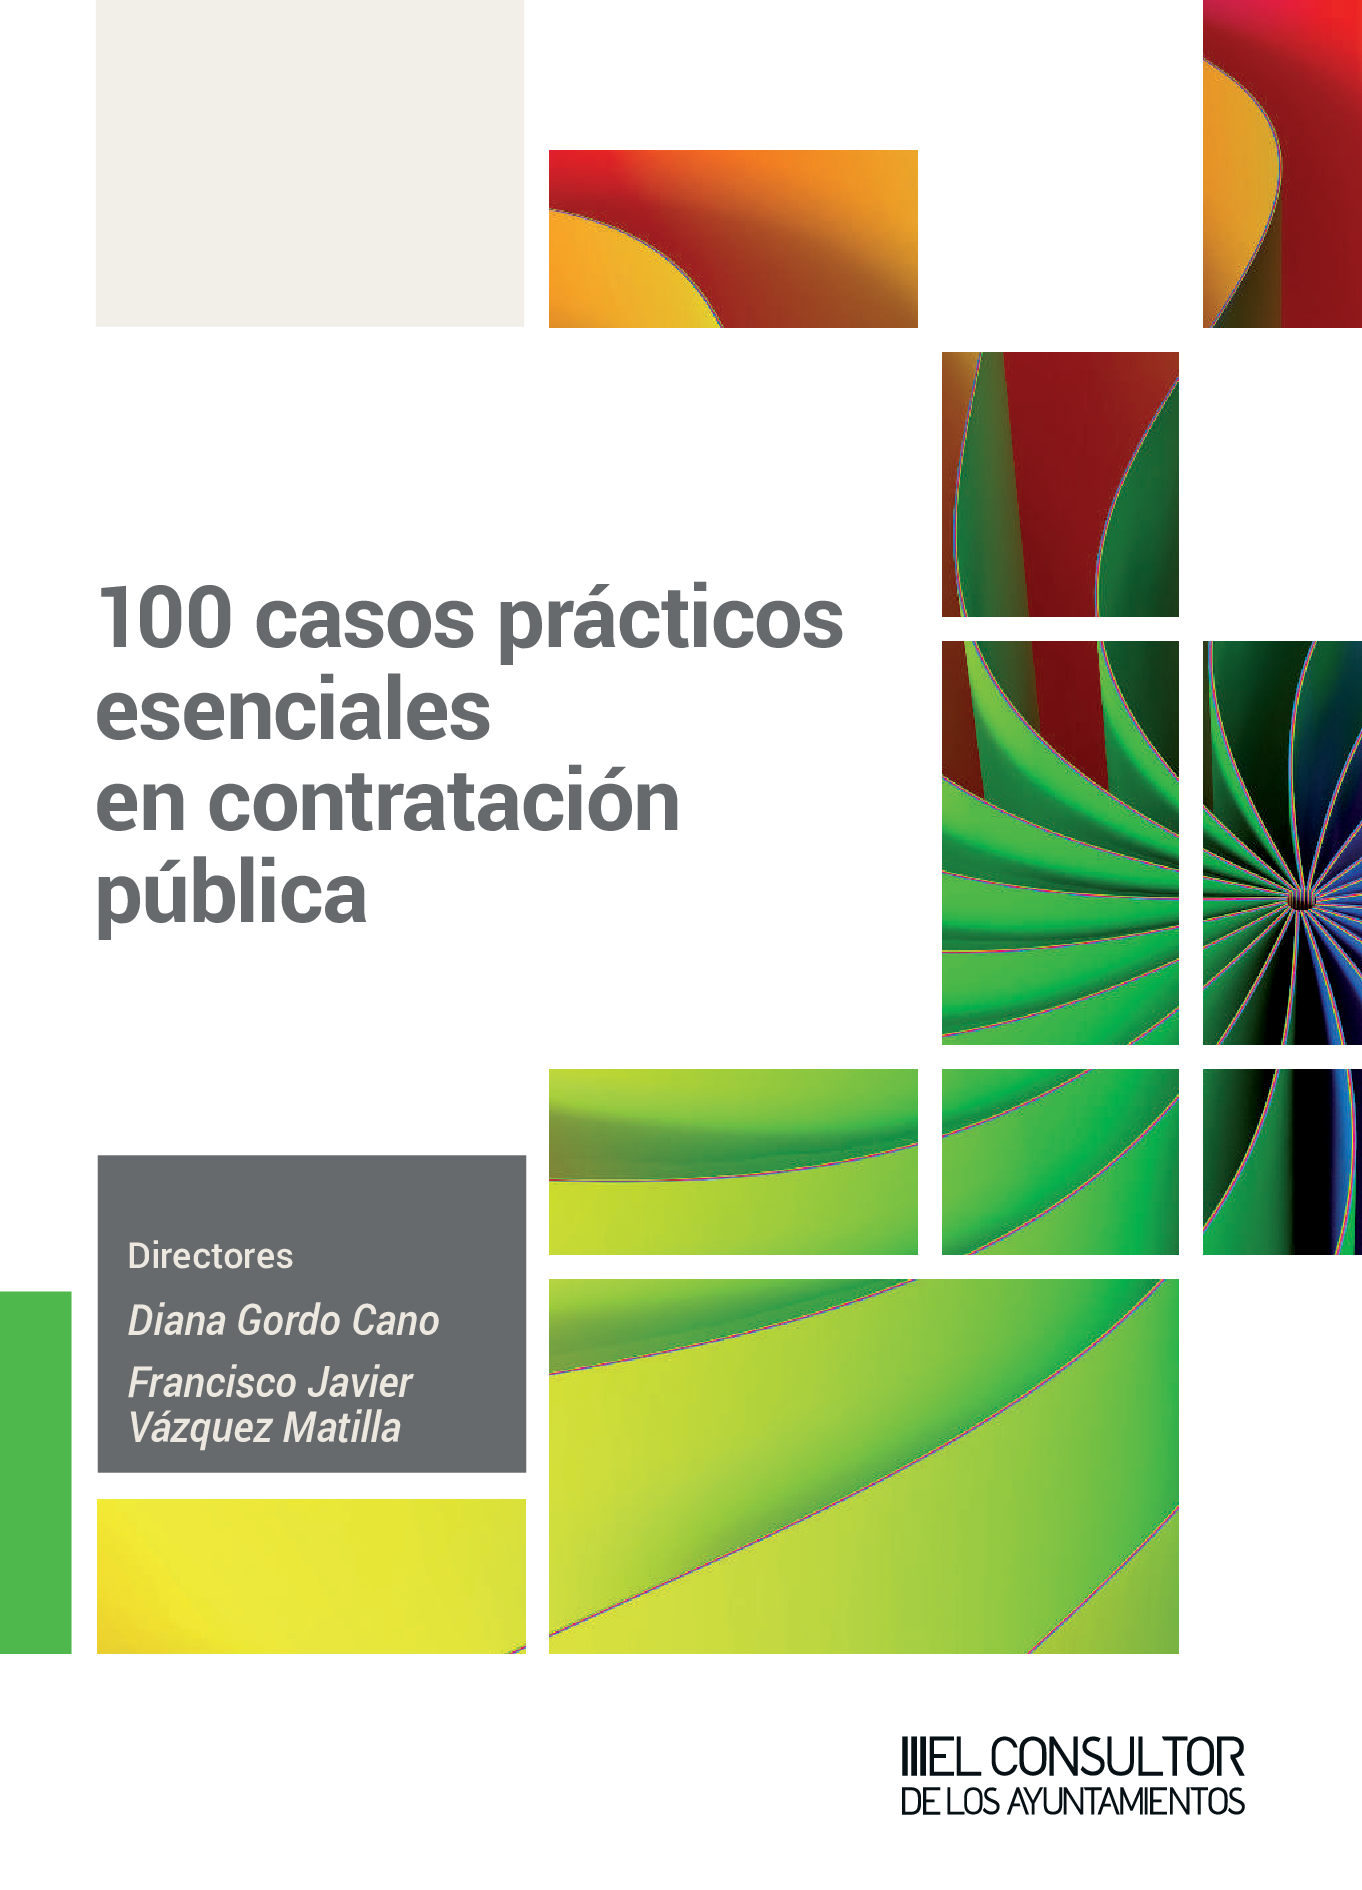 100 casos prácticos esenciales en contratación pública